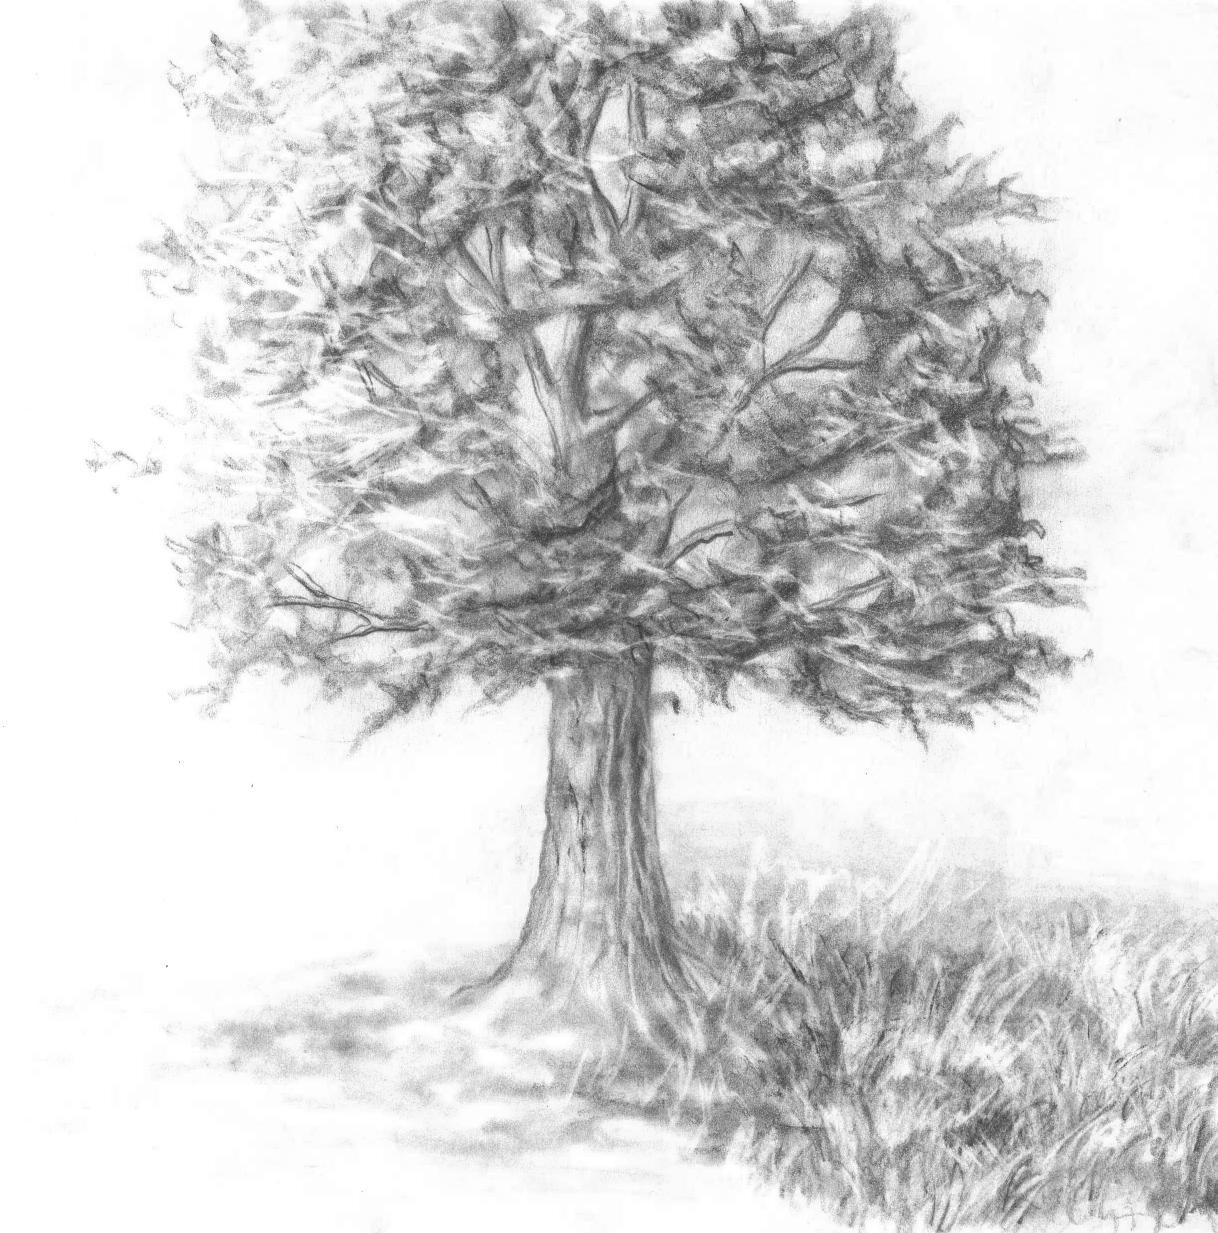 The Tree by madamlaracroft